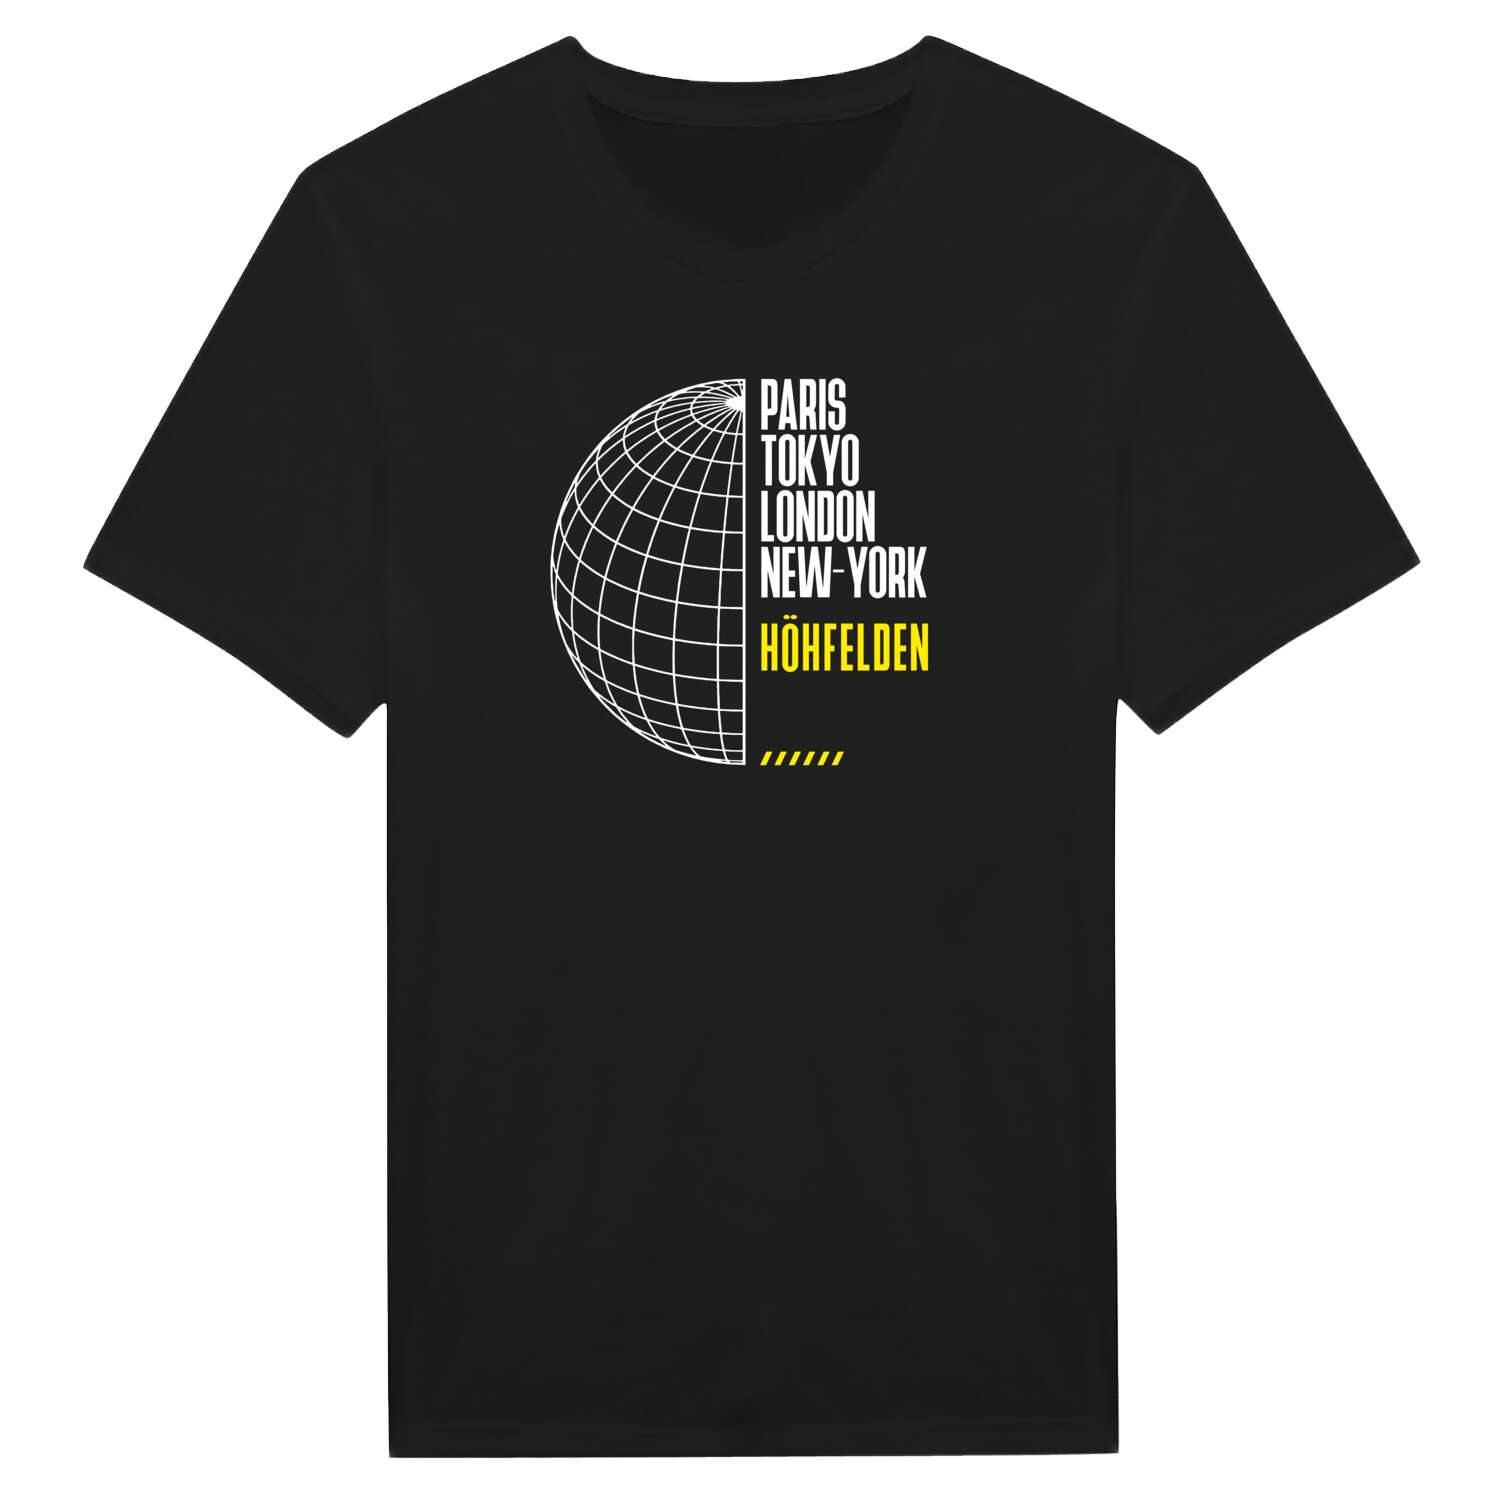 Höhfelden T-Shirt »Paris Tokyo London«